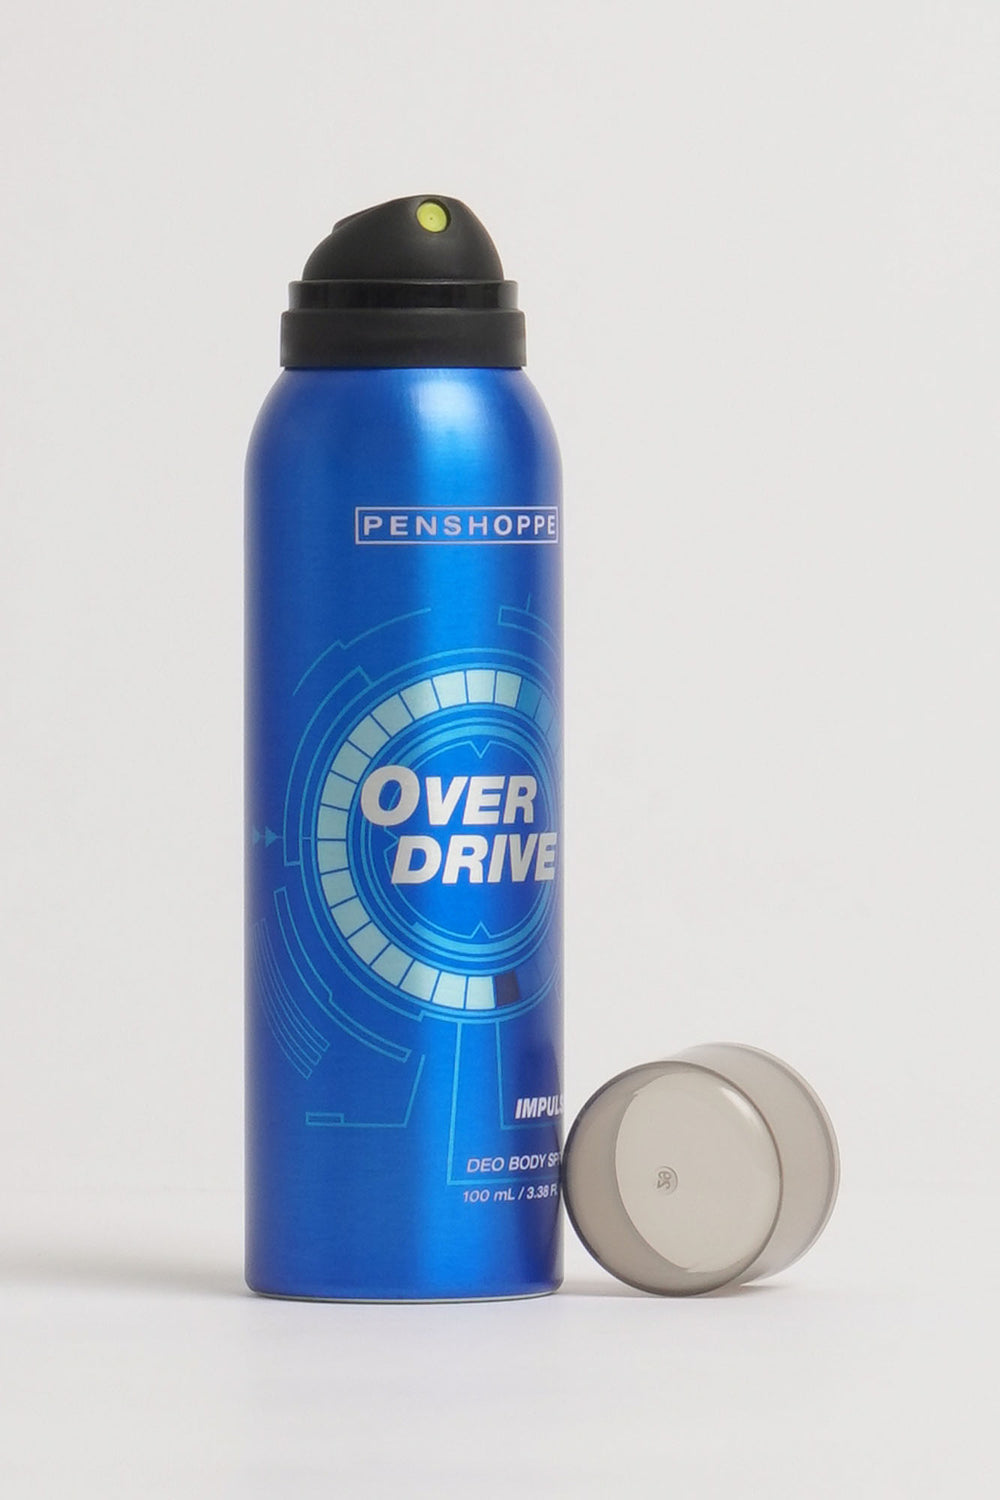 Overdrive Impulse Deo Body Spray For Men 100ML